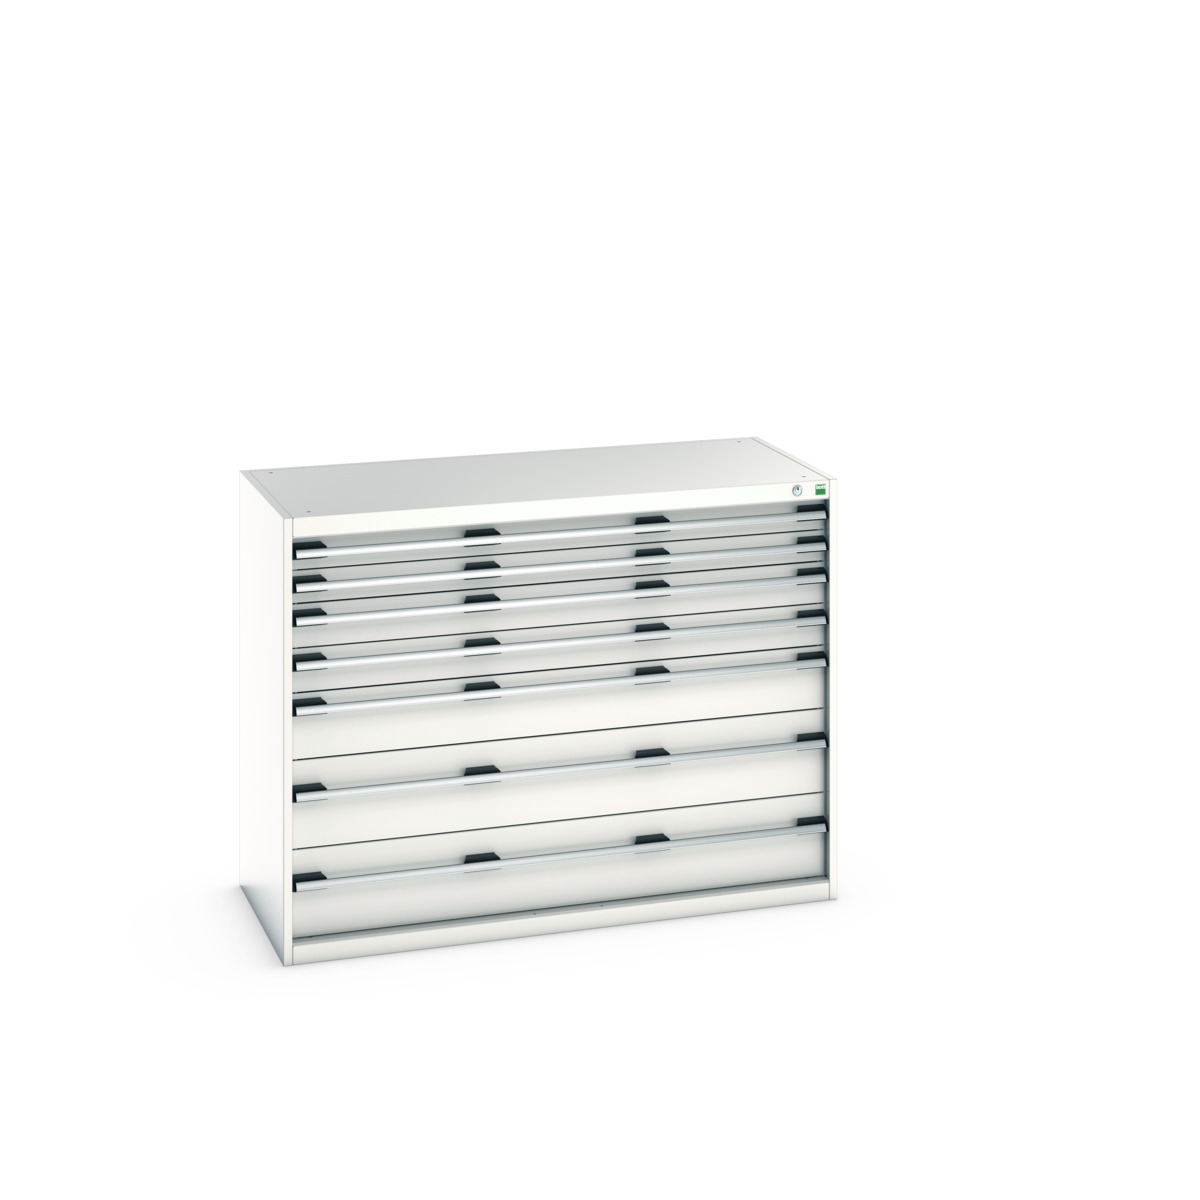 40022126.16V - cubio drawer cabinet